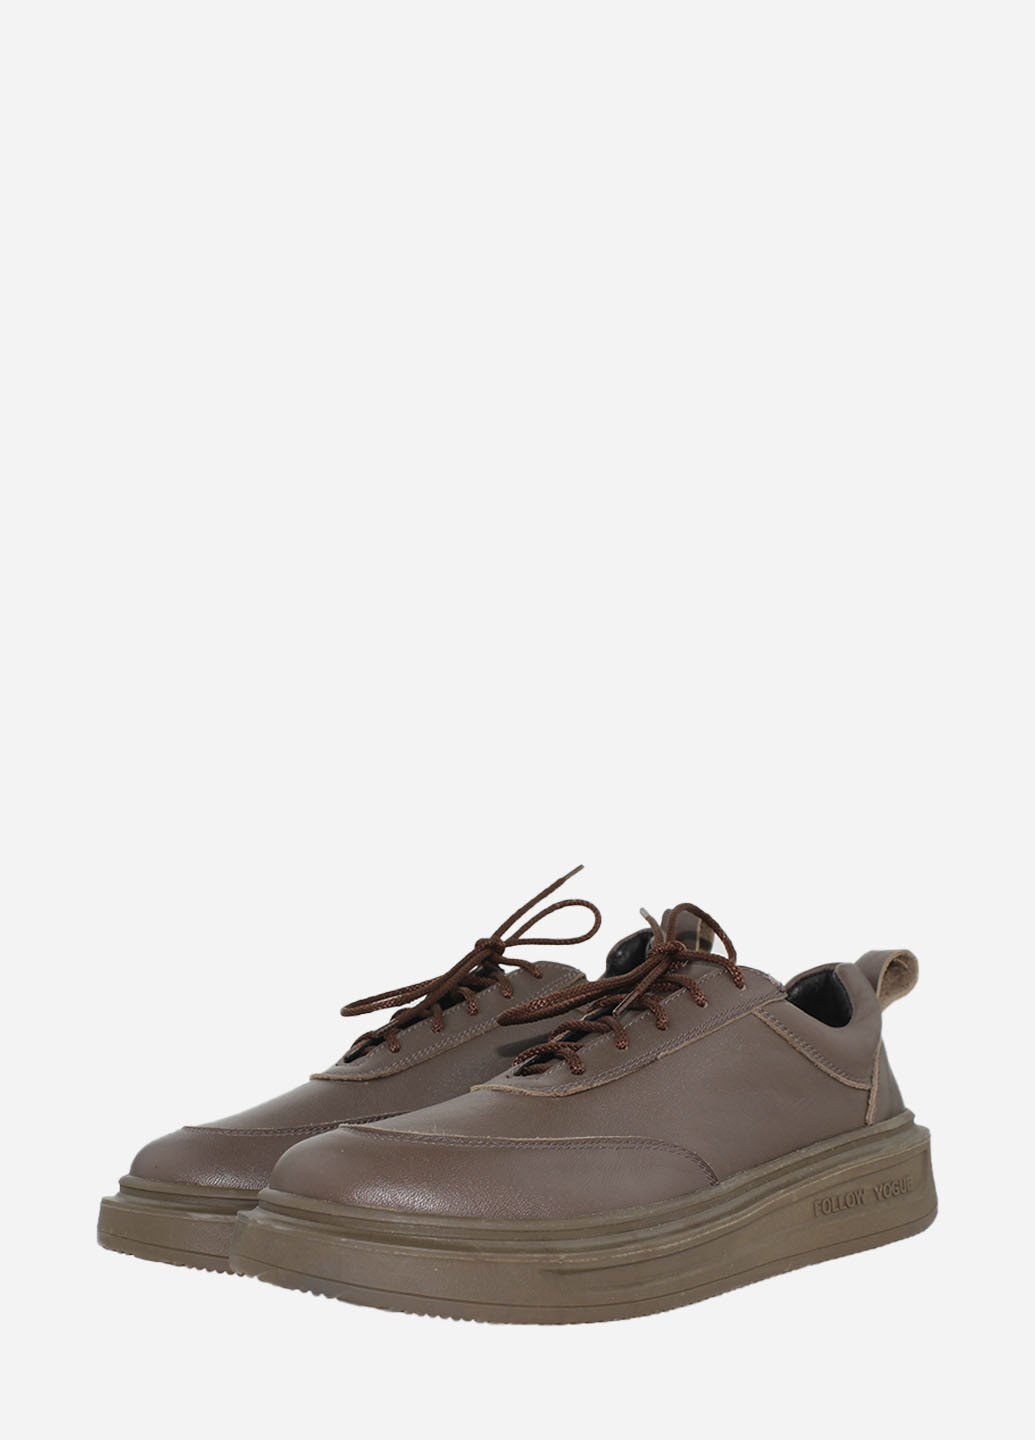 Коричневые демисезонные кроссовки r2599-2043 коричневый El passo